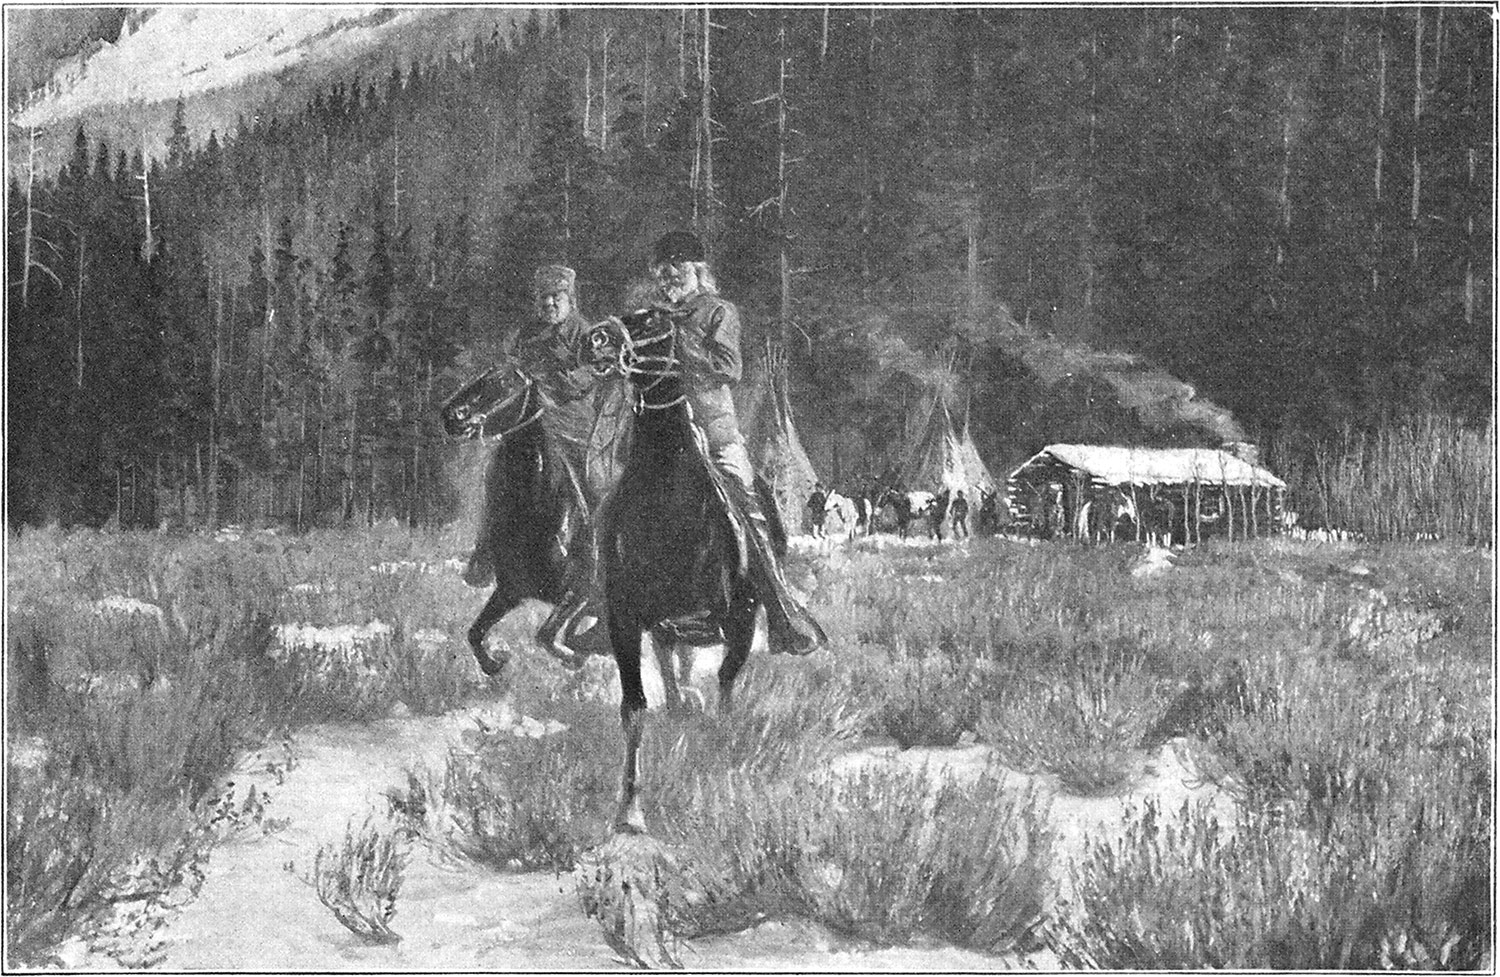 Buffalo Bill Cody rides from a log cabin.